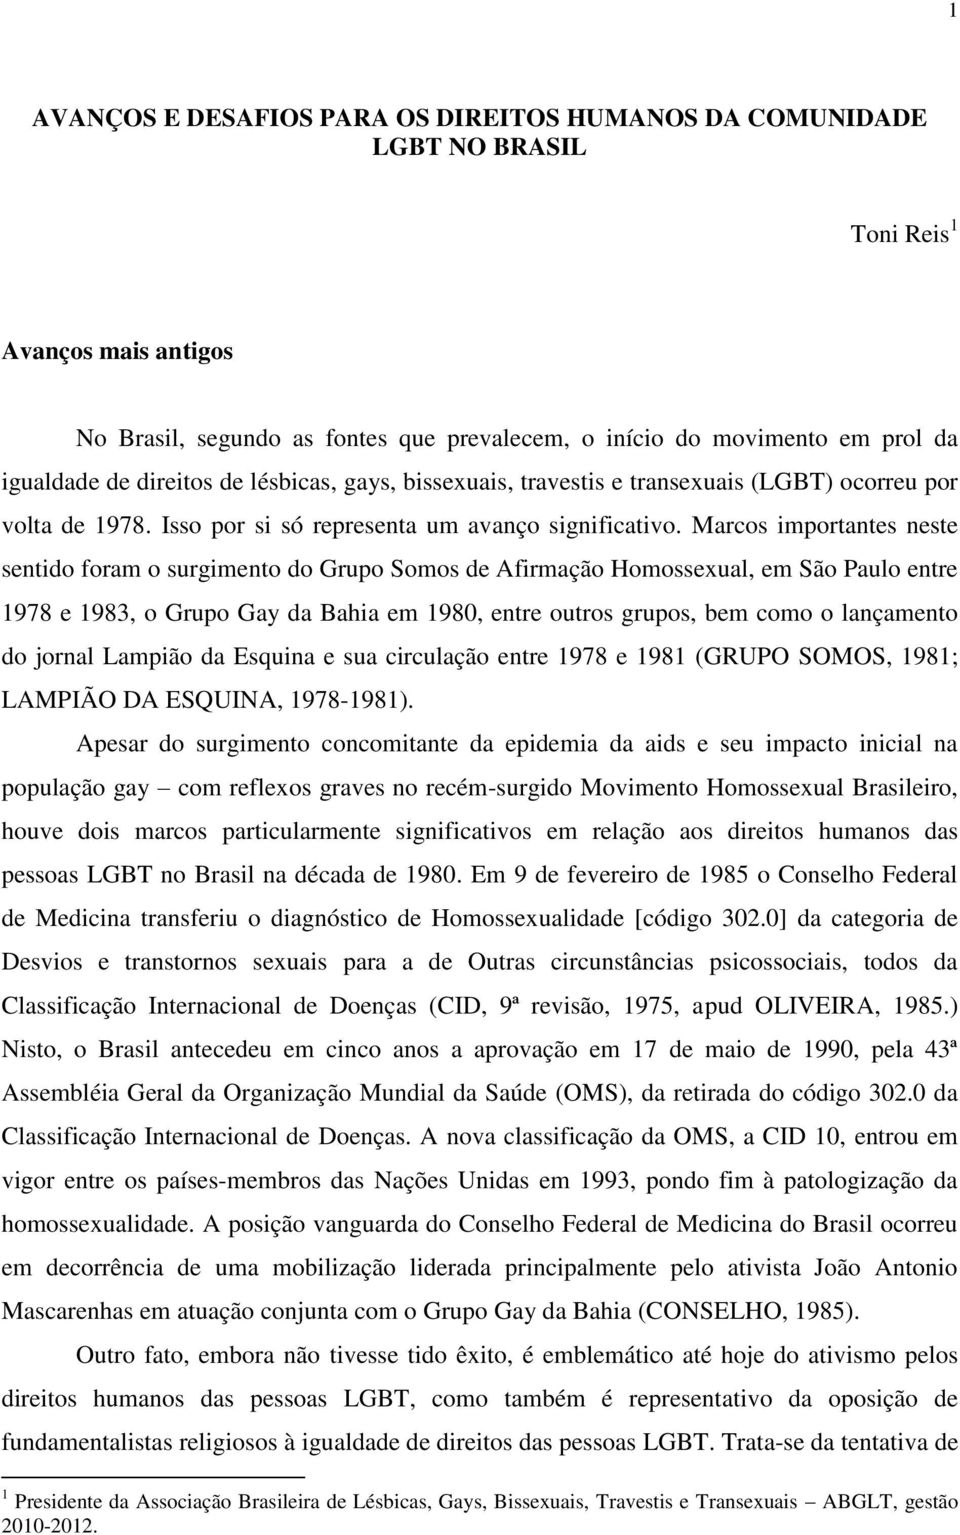 Marcos importantes neste sentido foram o surgimento do Grupo Somos de Afirmação Homossexual, em São Paulo entre 1978 e 1983, o Grupo Gay da Bahia em 1980, entre outros grupos, bem como o lançamento